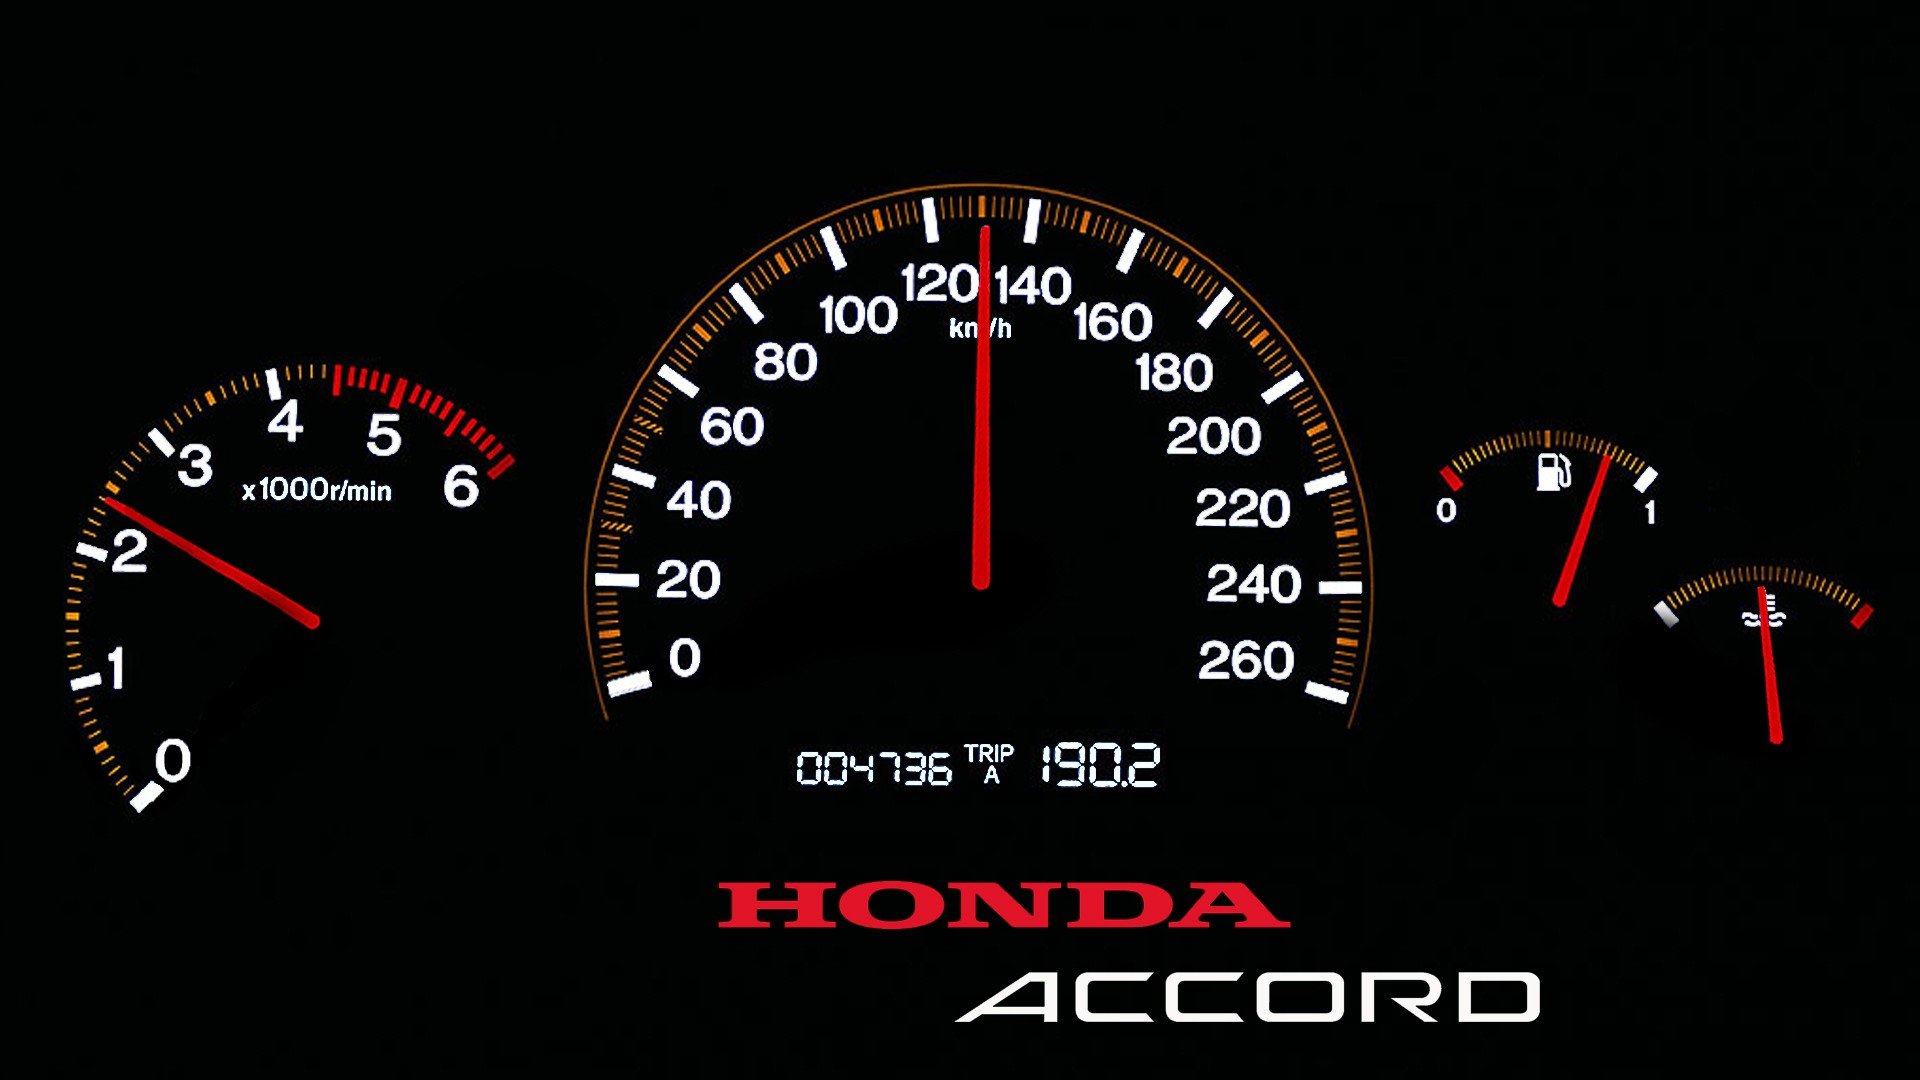 Honda, Honda accord Wallpaper